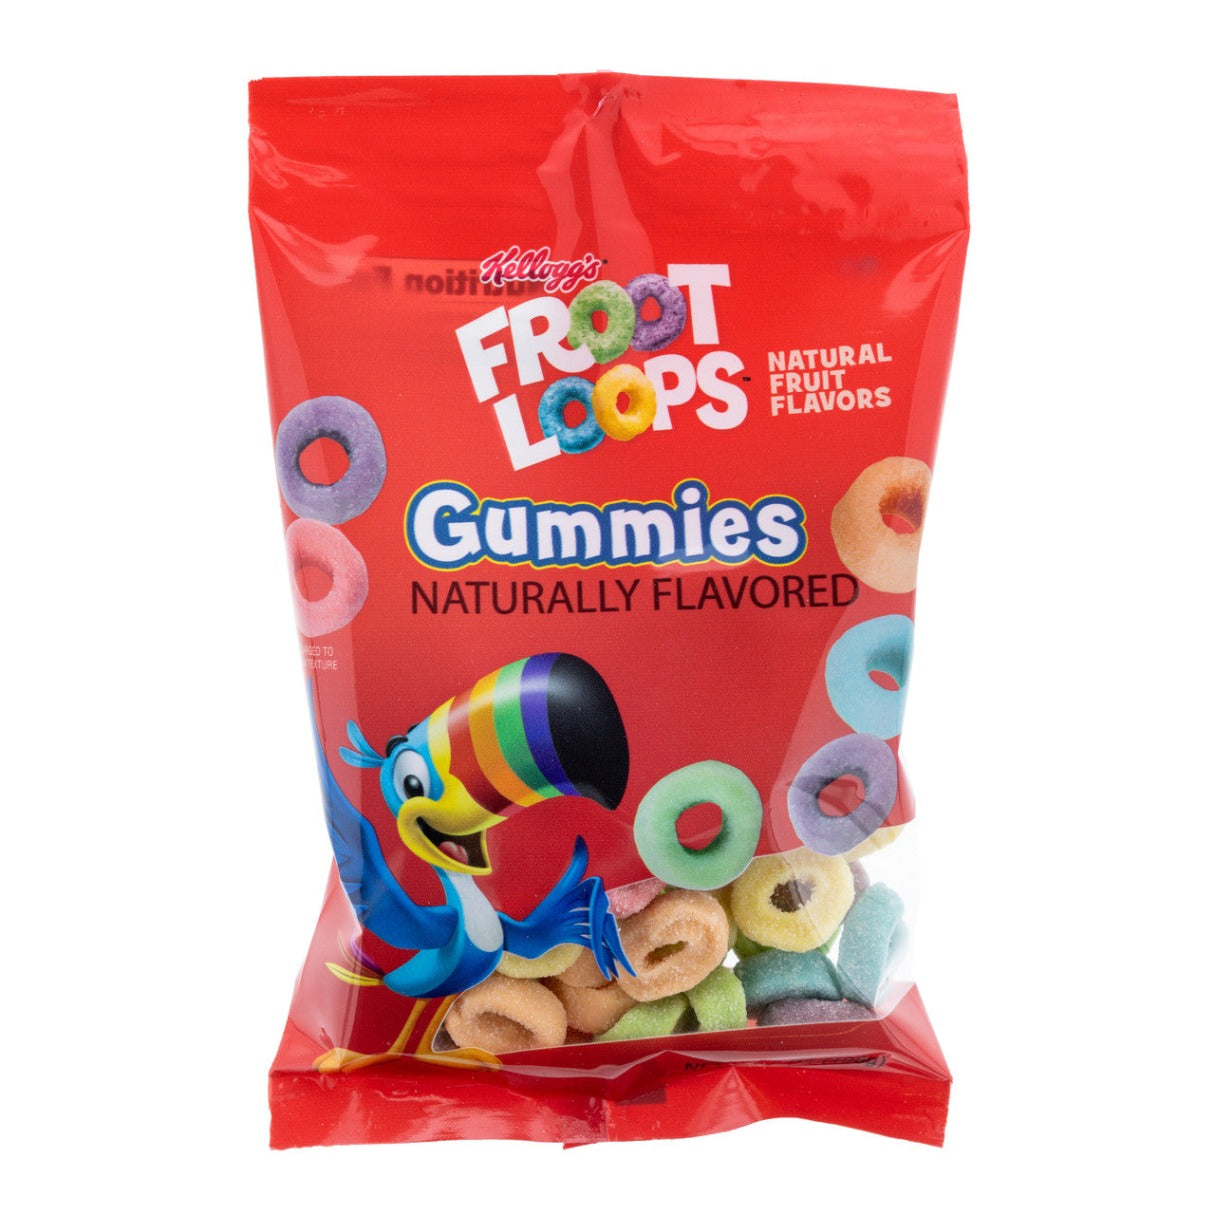 Froot Loops Gummies 7oz - 16ct